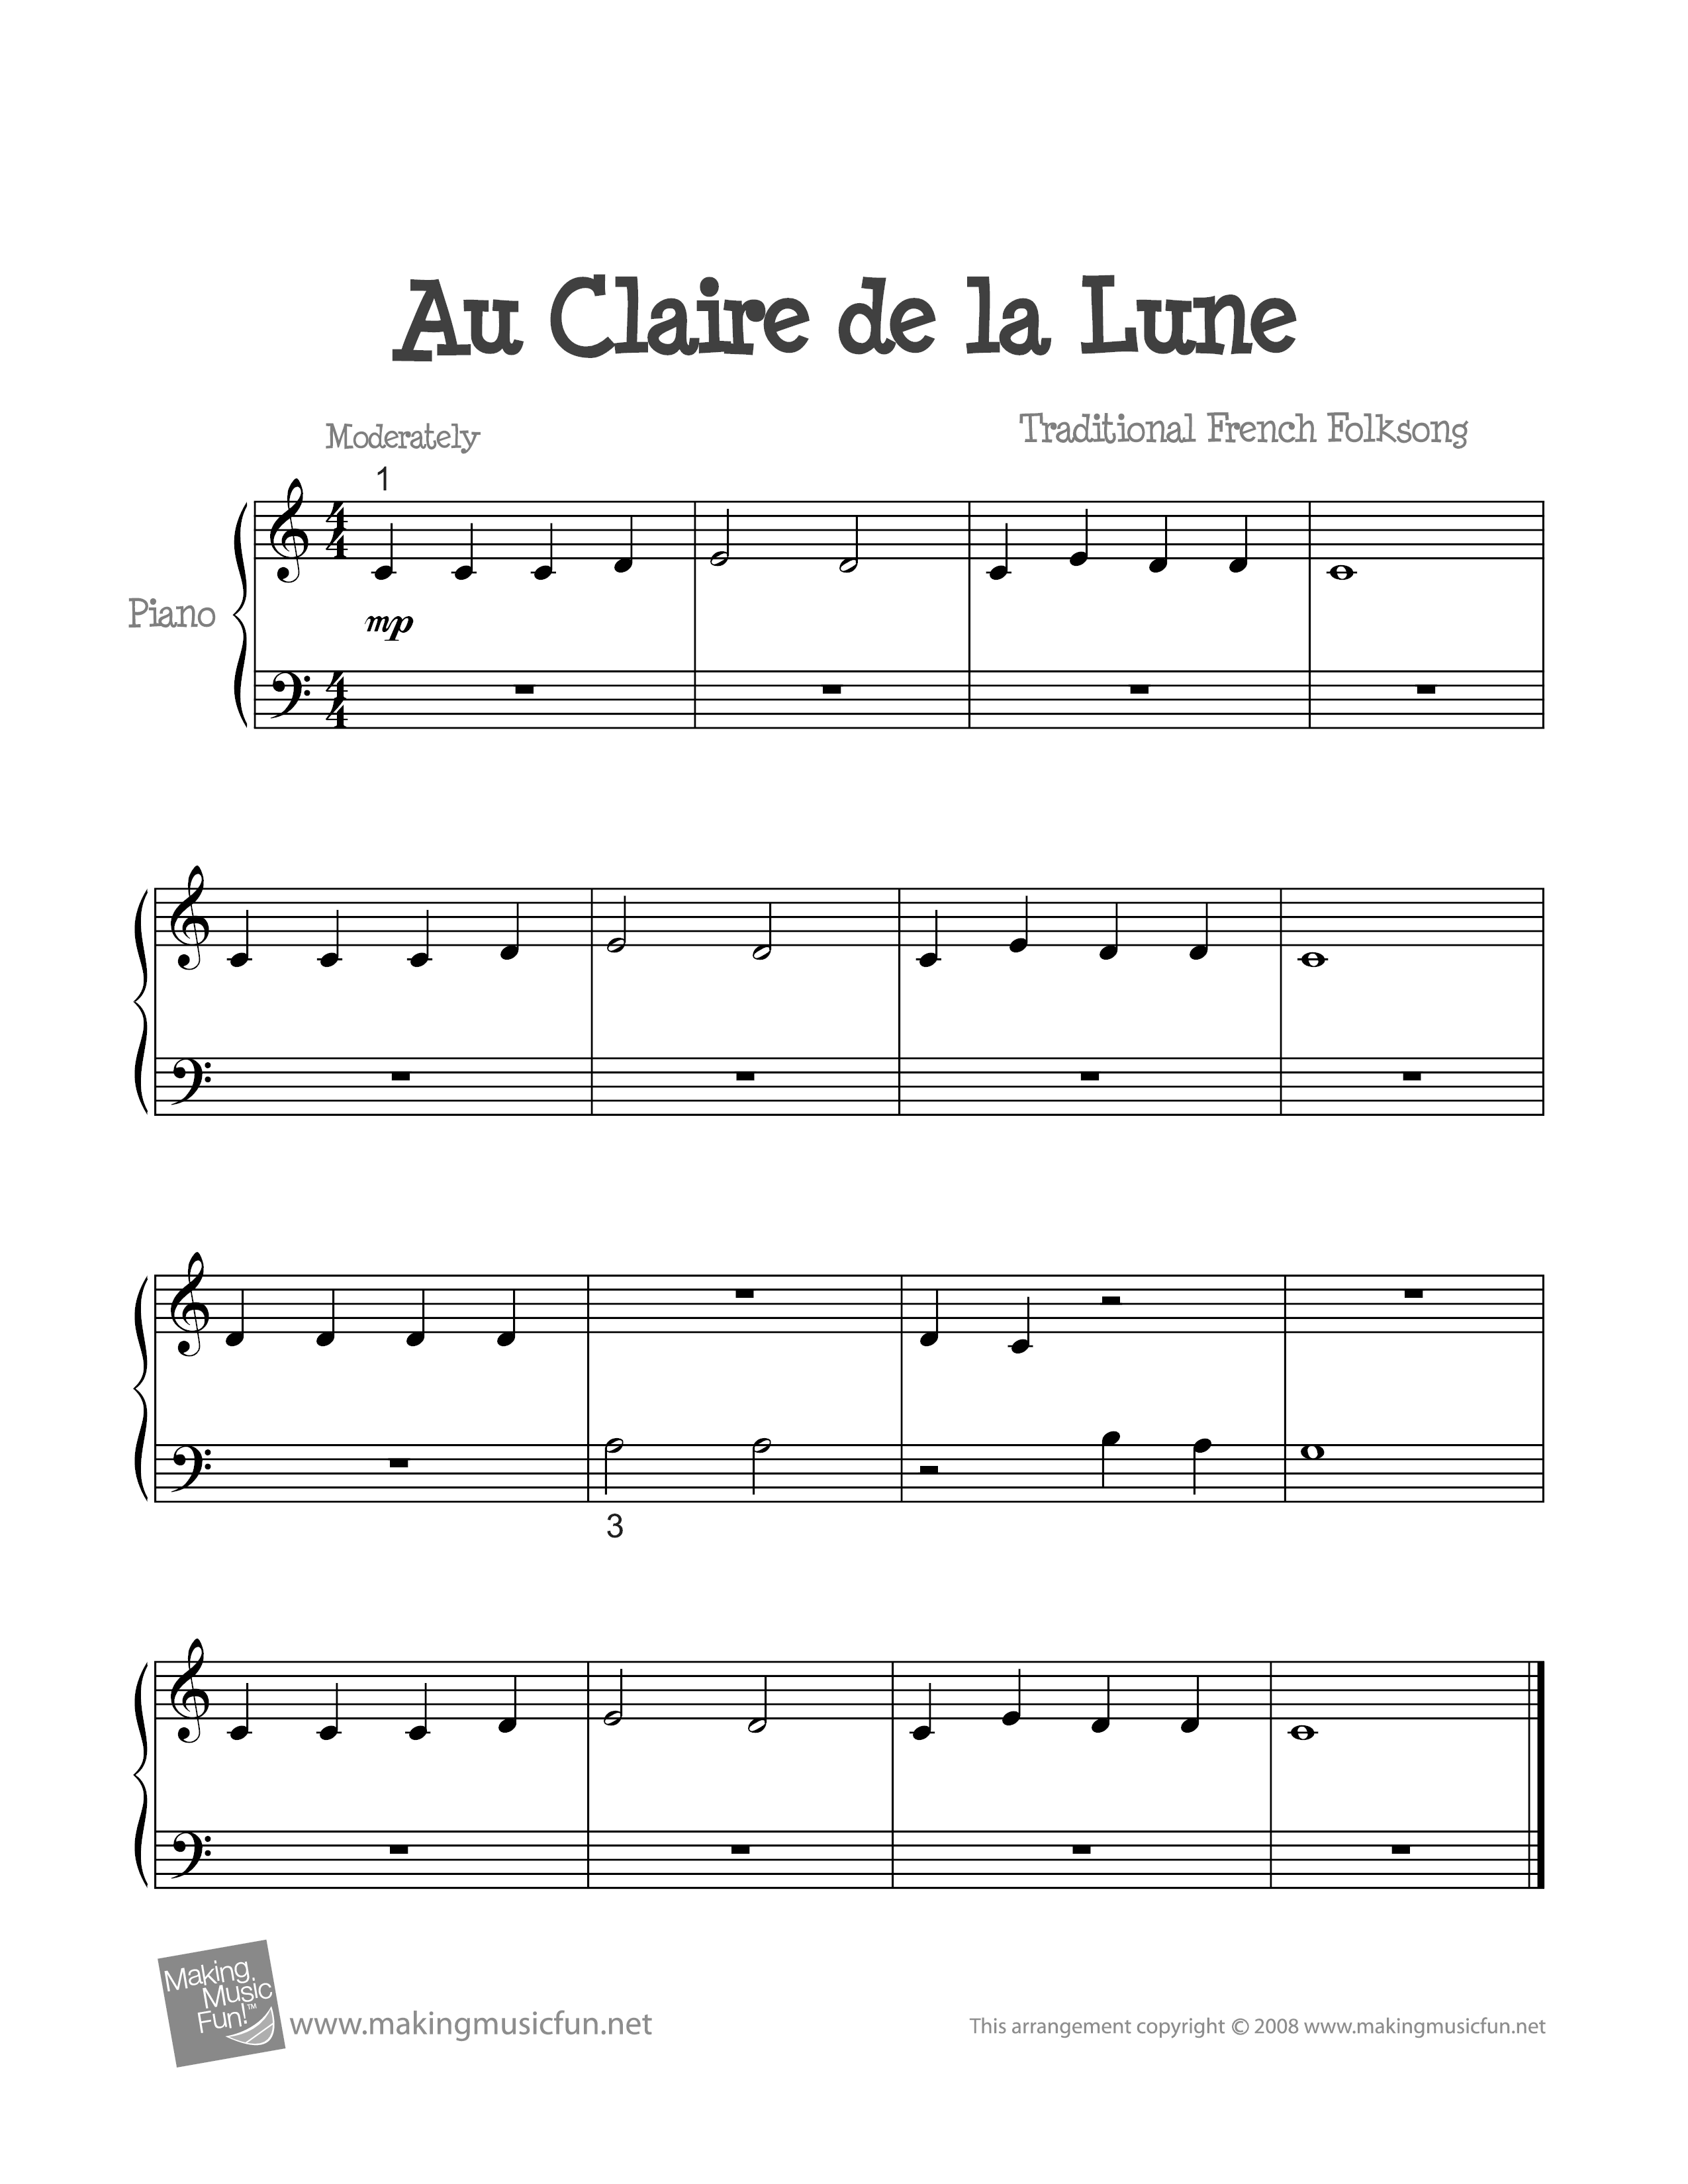 Au Clair De La Lune Piano Partition French Folk Song-Au Clair De La Lune Sheet Music pdf, - Free Score Download ★